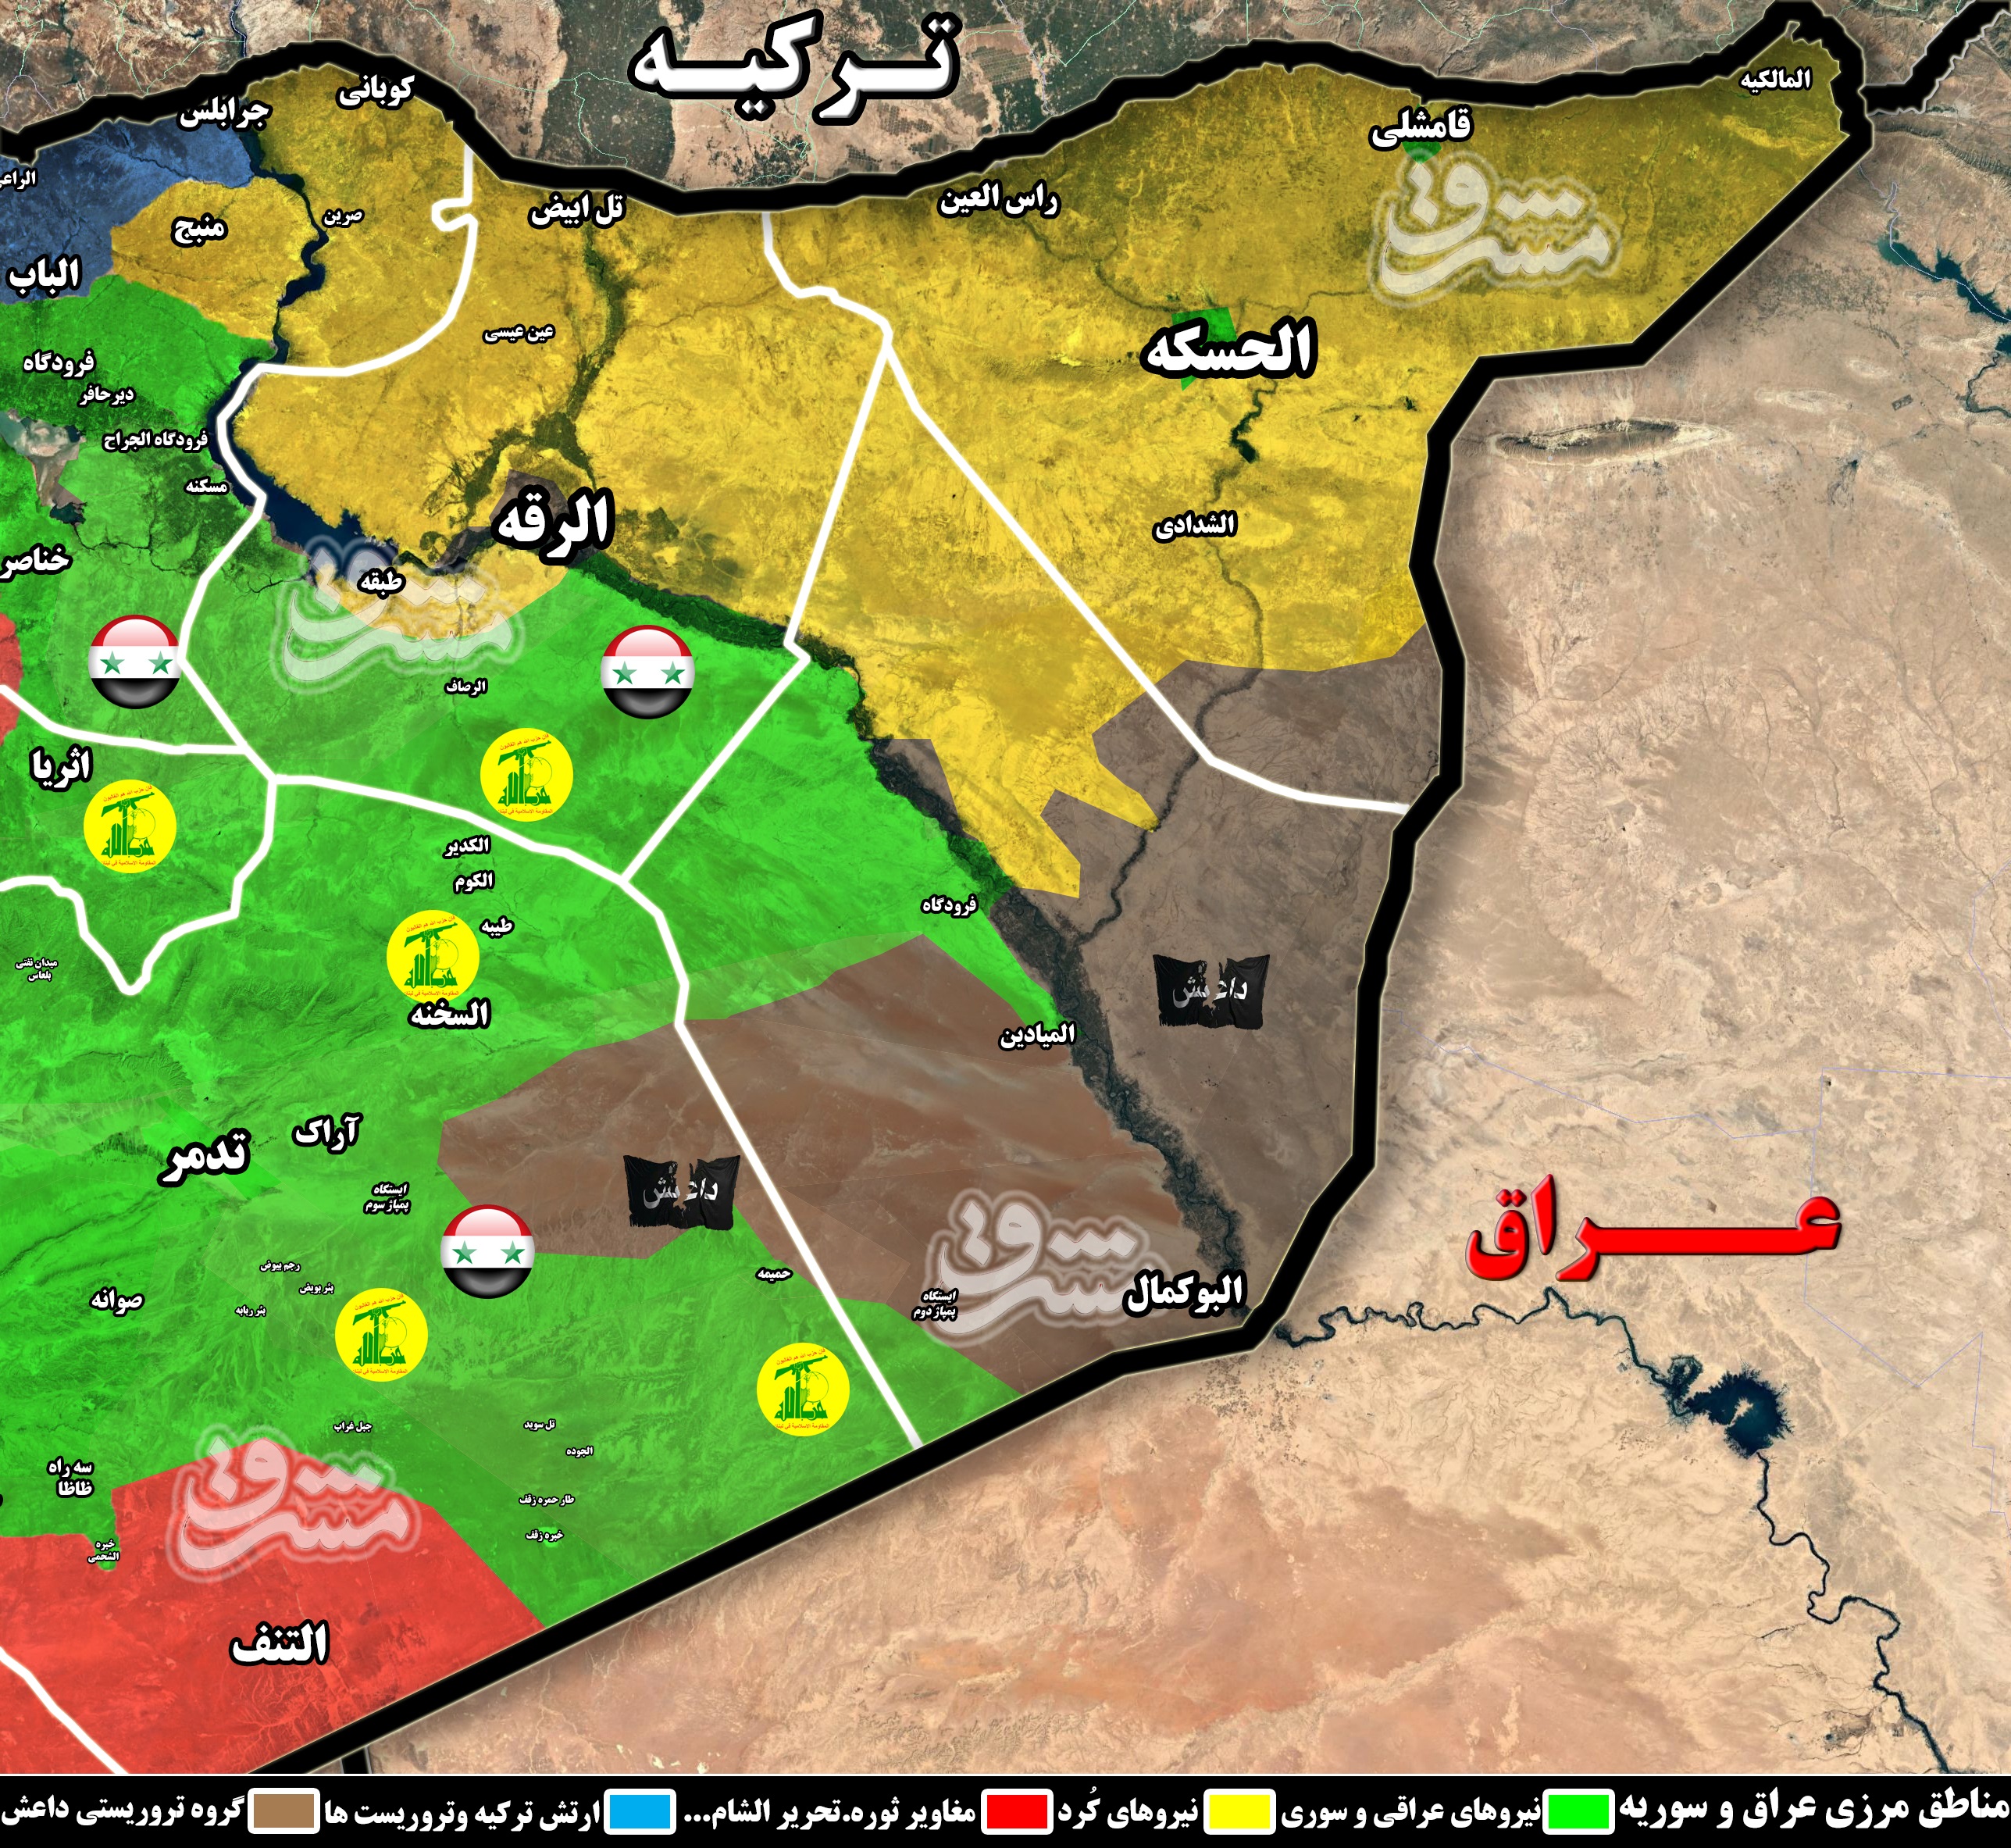 2082564 - عملیات پاکسازی آخرین بقایای داعش در غرب شهر دیرالزور آغاز شد/ ۹۳ درصد نگین فرات در کنترل نیروهای جبهه مقاومت + نقشه میدانی